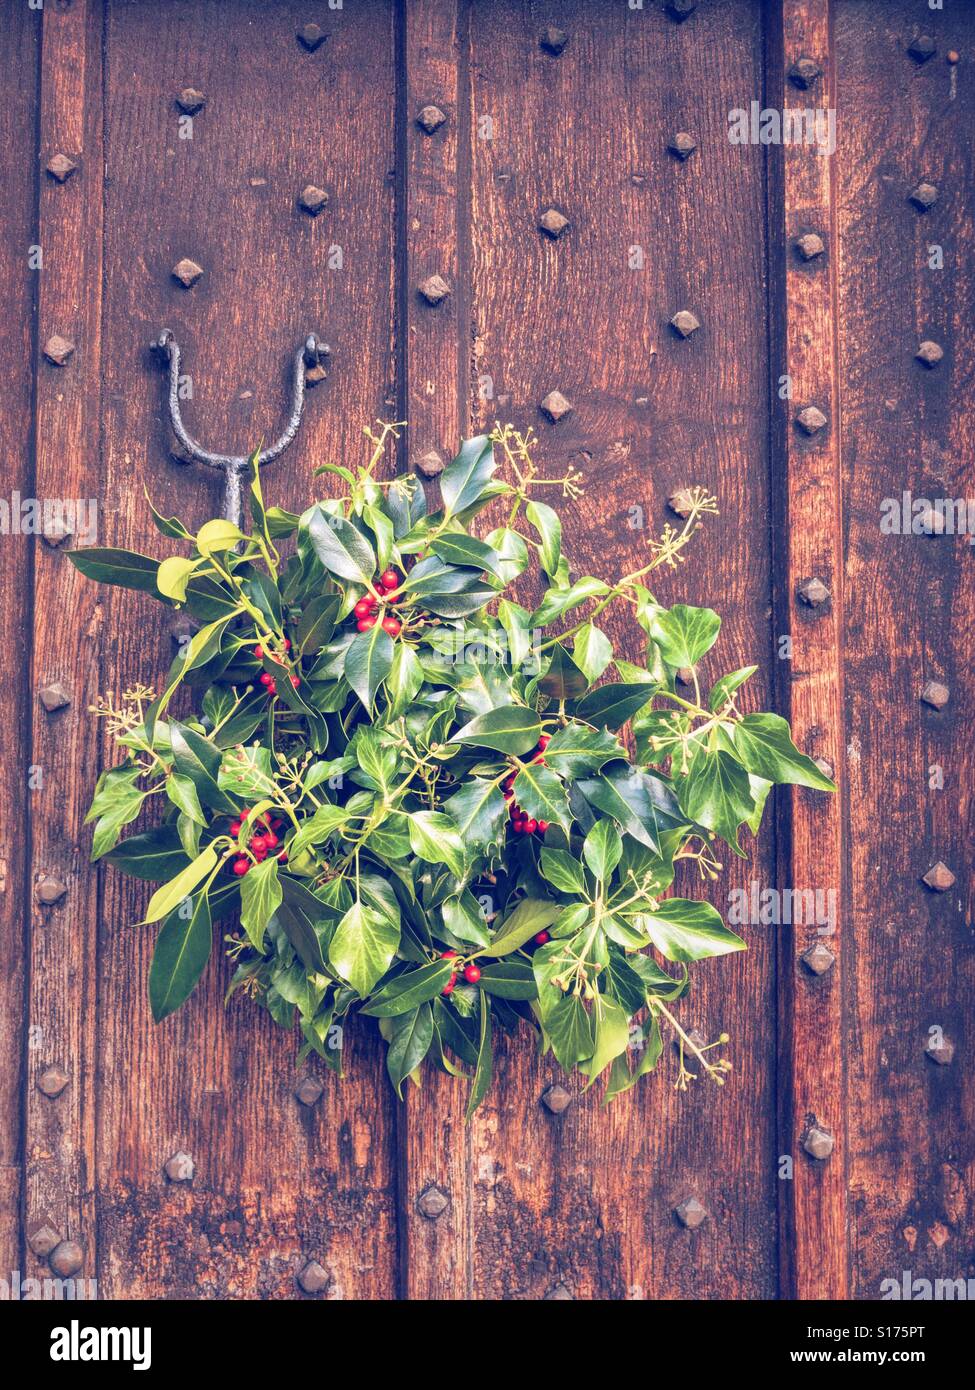 BAKEWELL, Inghilterra - 4 novembre: Holly e vischio ghirlanda di Natale appeso sulla porta di legno in Gran Bretagna. In Bakewell, Inghilterra. Il 4 dicembre 2016. Foto Stock